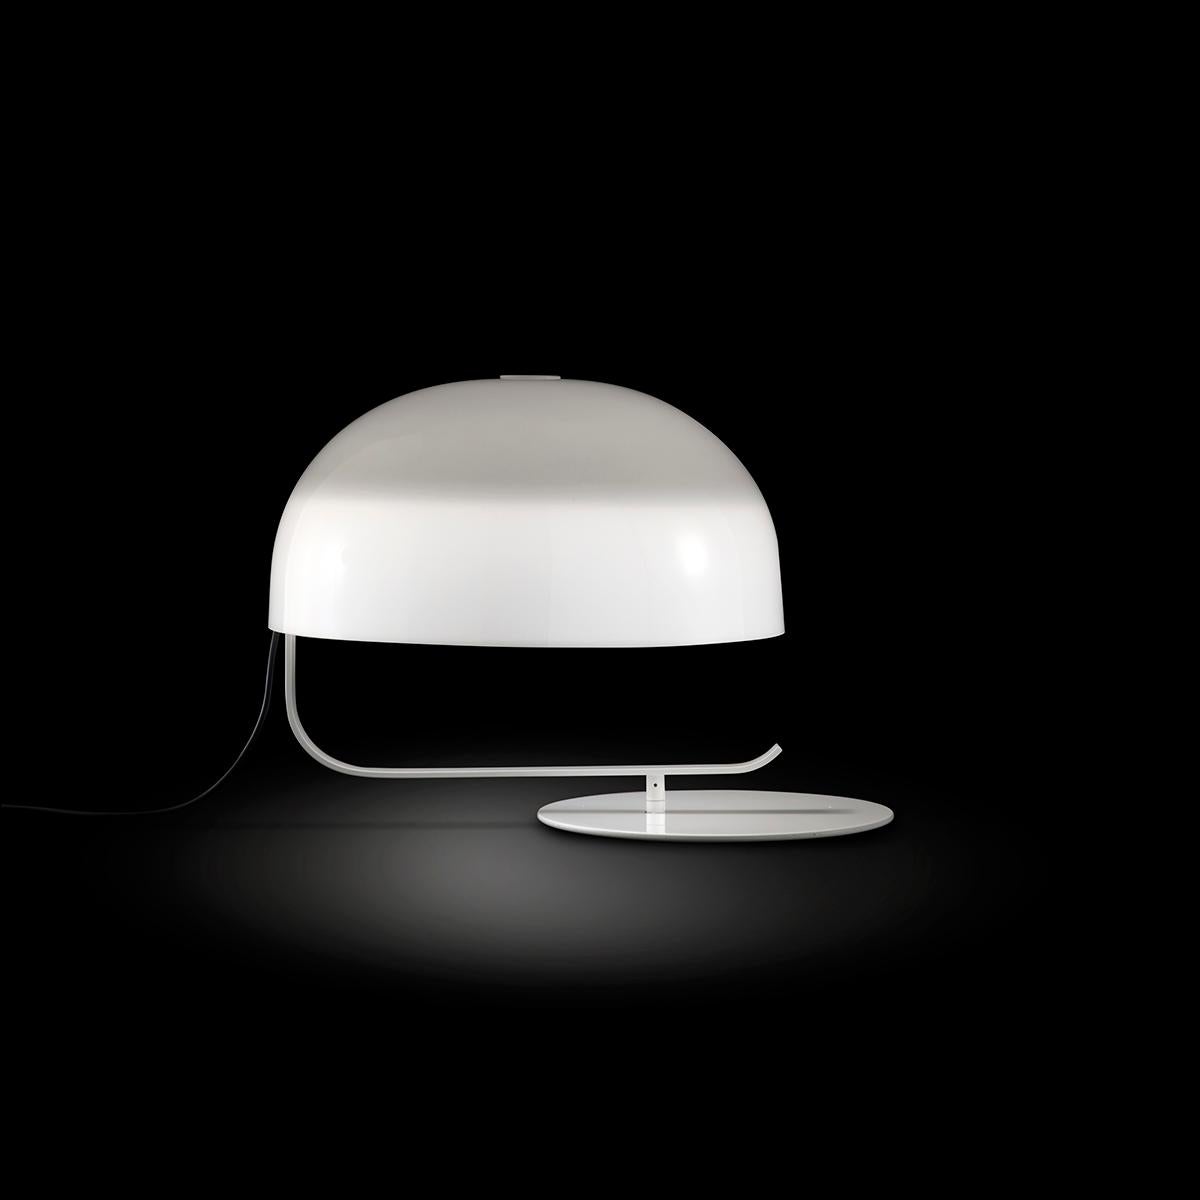 Lampe de table 'Zanuso' créée par Marco Zanuso en 2013.
Lampe de table donnant une lumière diffuse. Diffuseur opale en PMMA tournant sur la base. Support et base incurvés en métal peint.
Fabriqué par Oluce, Italie.

En 1963, Marco Zanuso a conçu